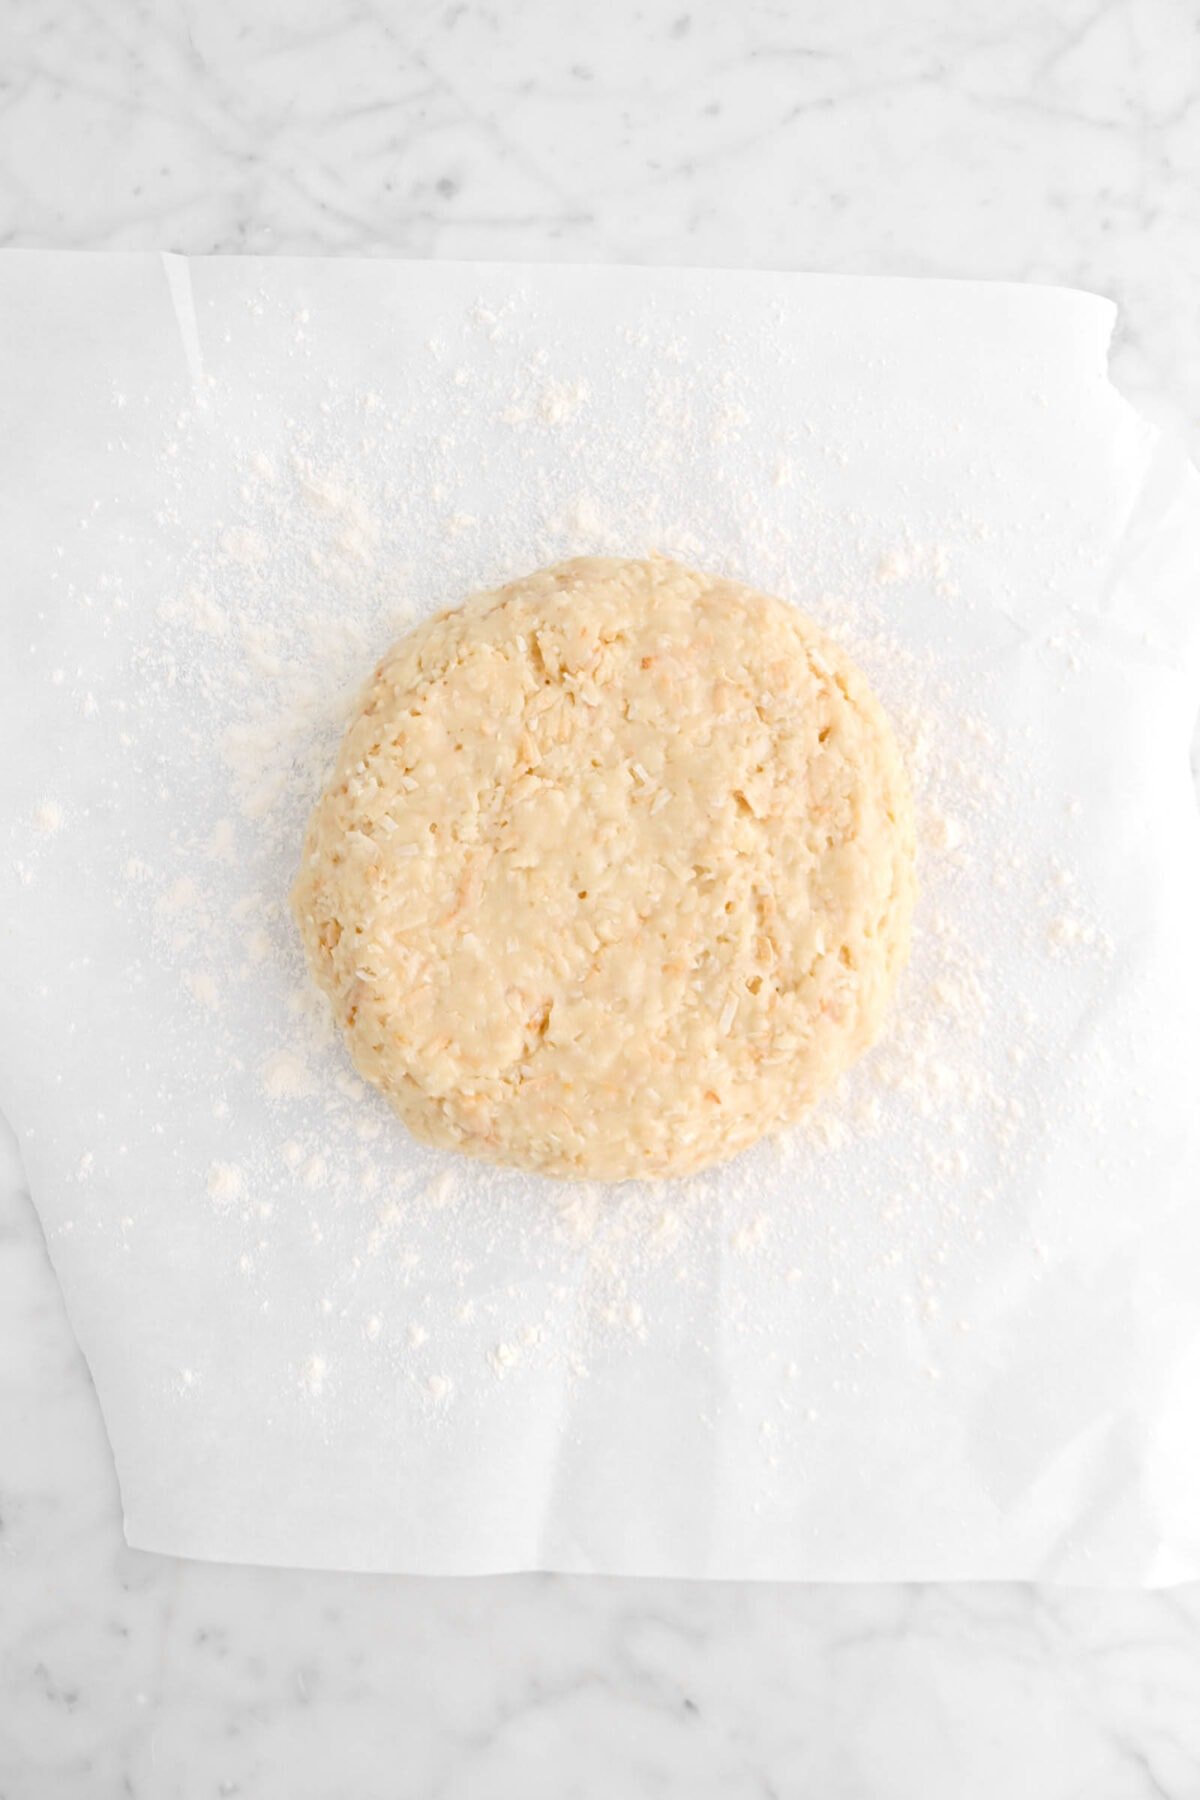 scone dough on floured parchment